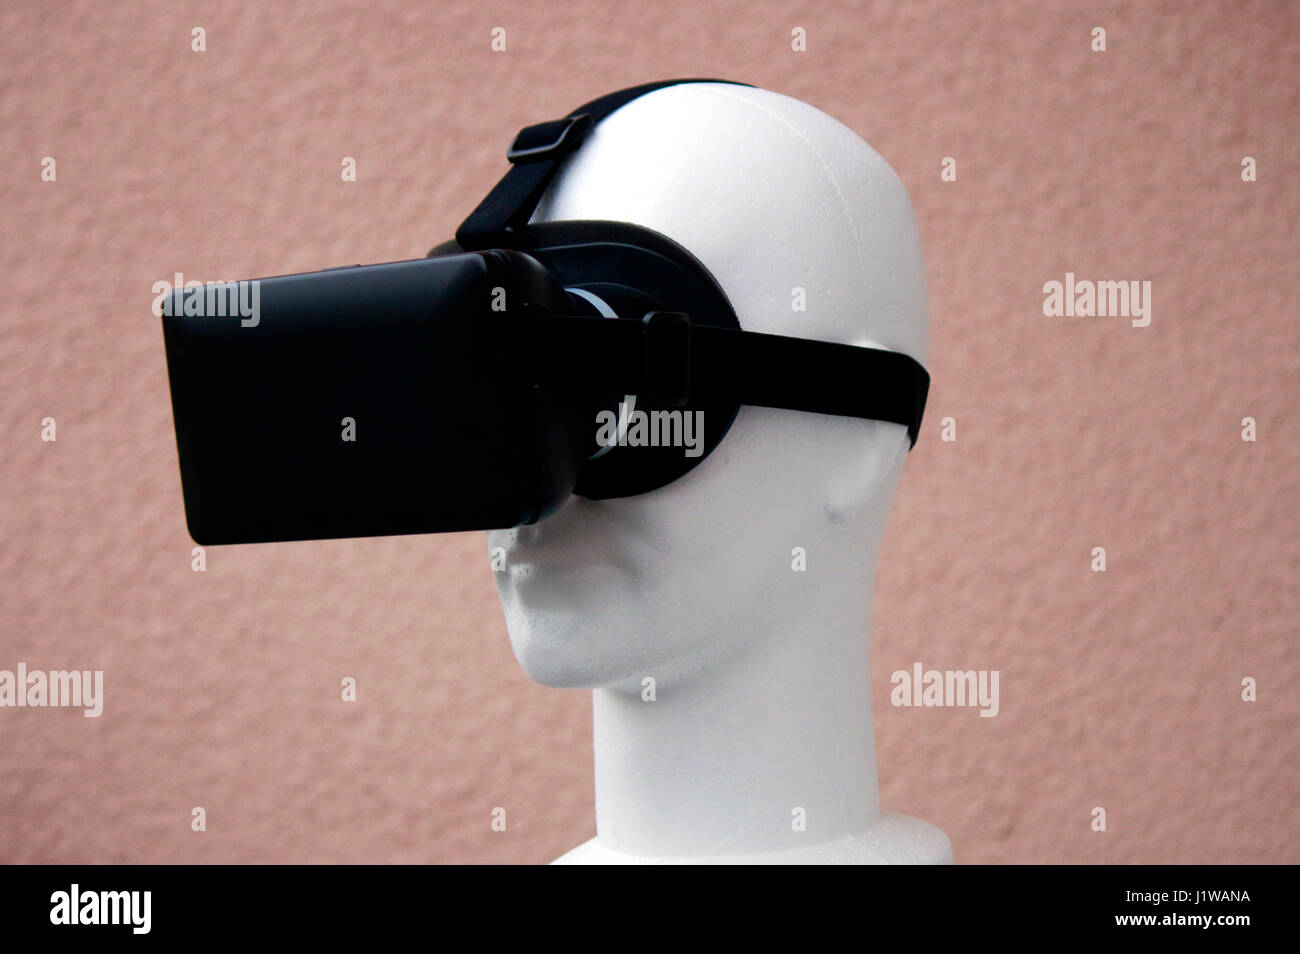 Symbolbild VR/ Virtuelle Realitaet - Datenbrille. Stock Photo